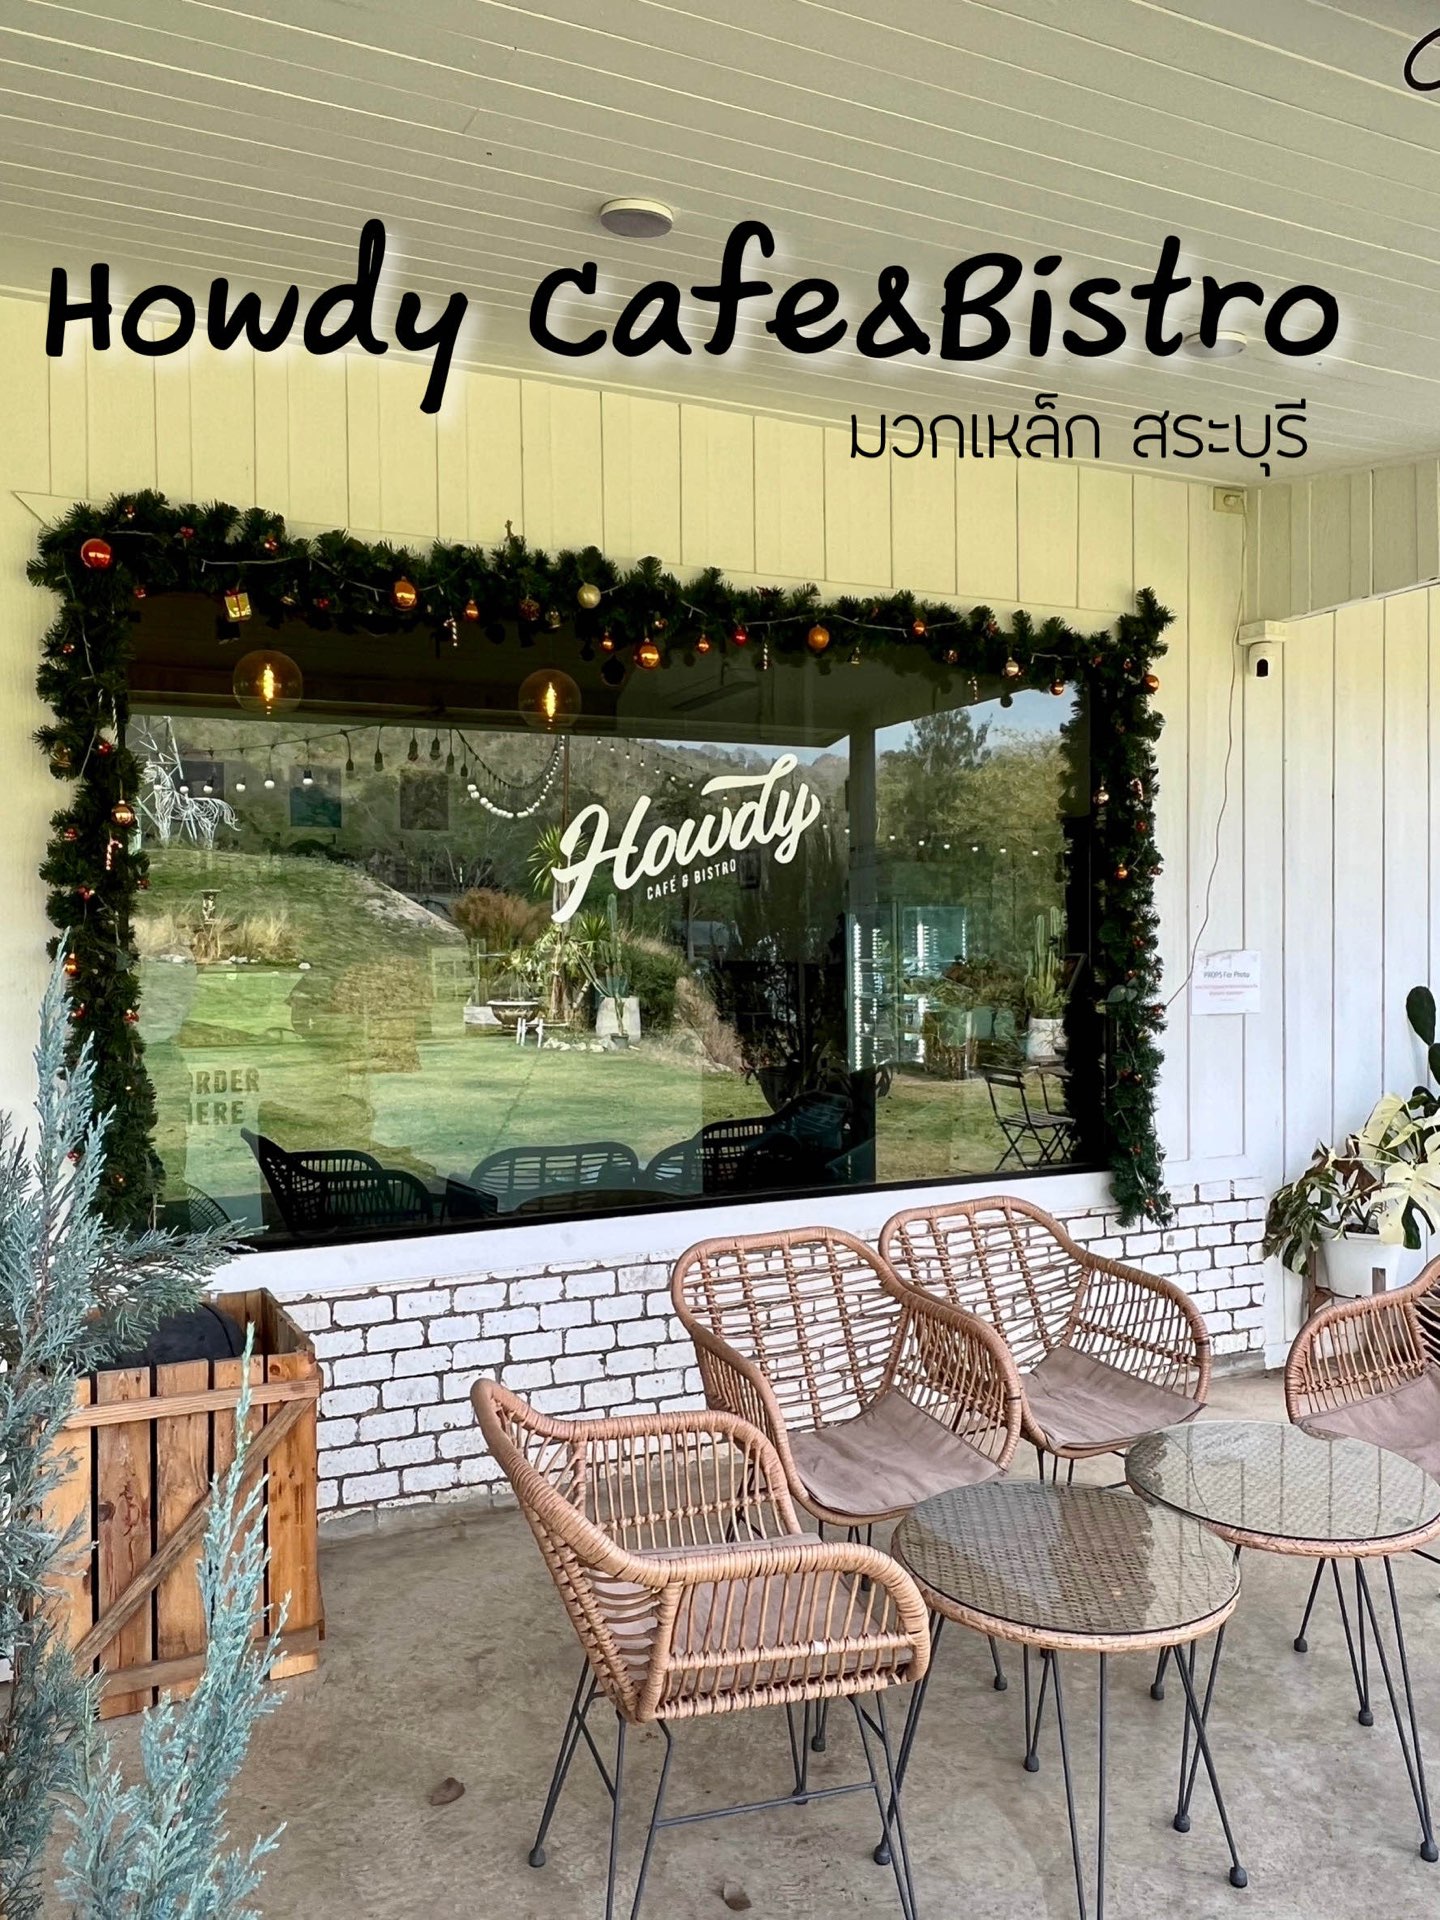 Howdy Cafe&Bistro,一个不容错过的可爱商店。